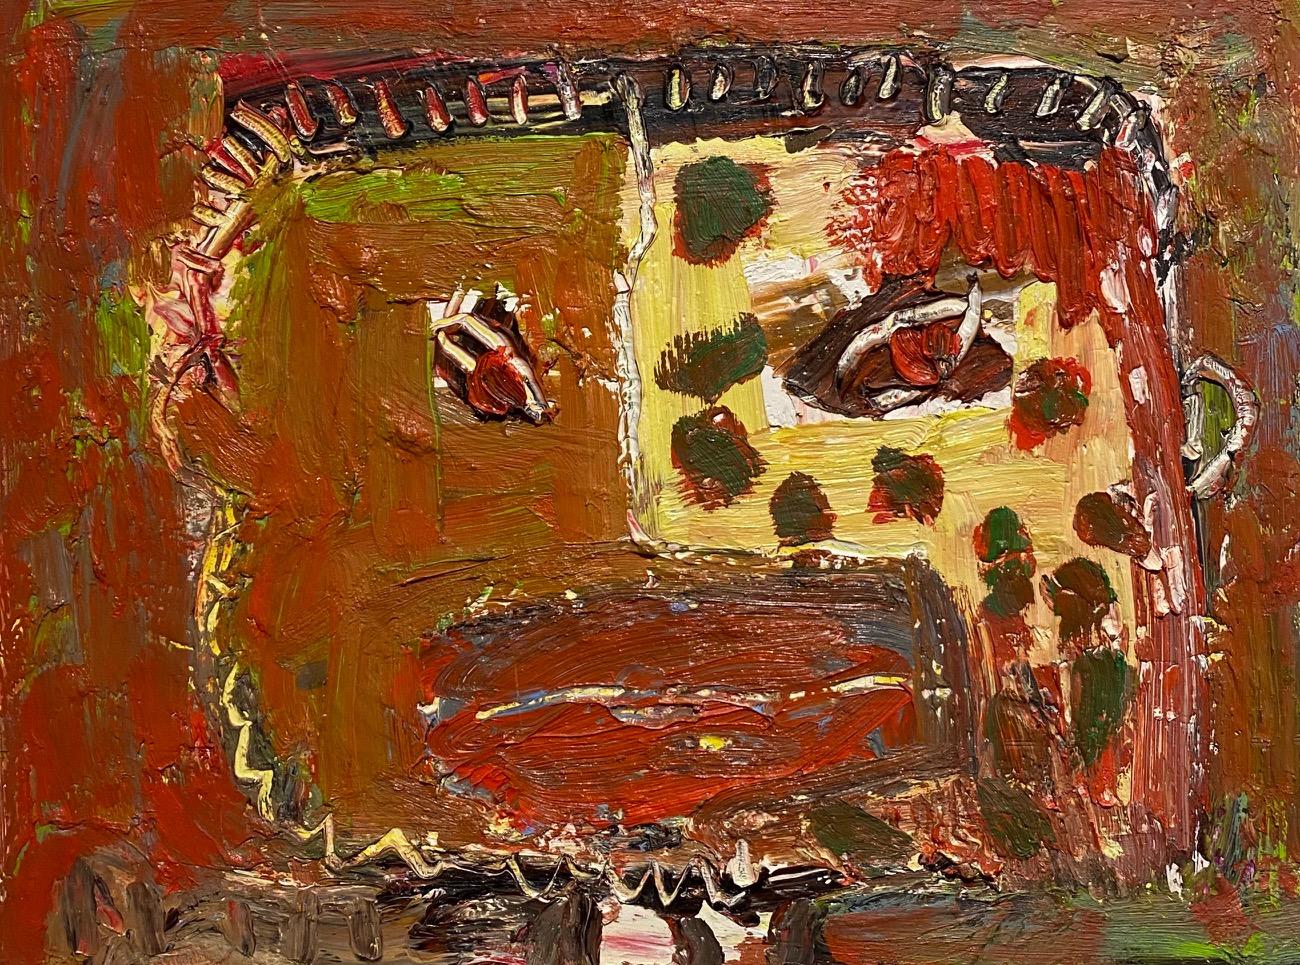 Abstract Painting Dick Wray - « Sans titre, huile, technique mixte sur toile - peinture abstraite